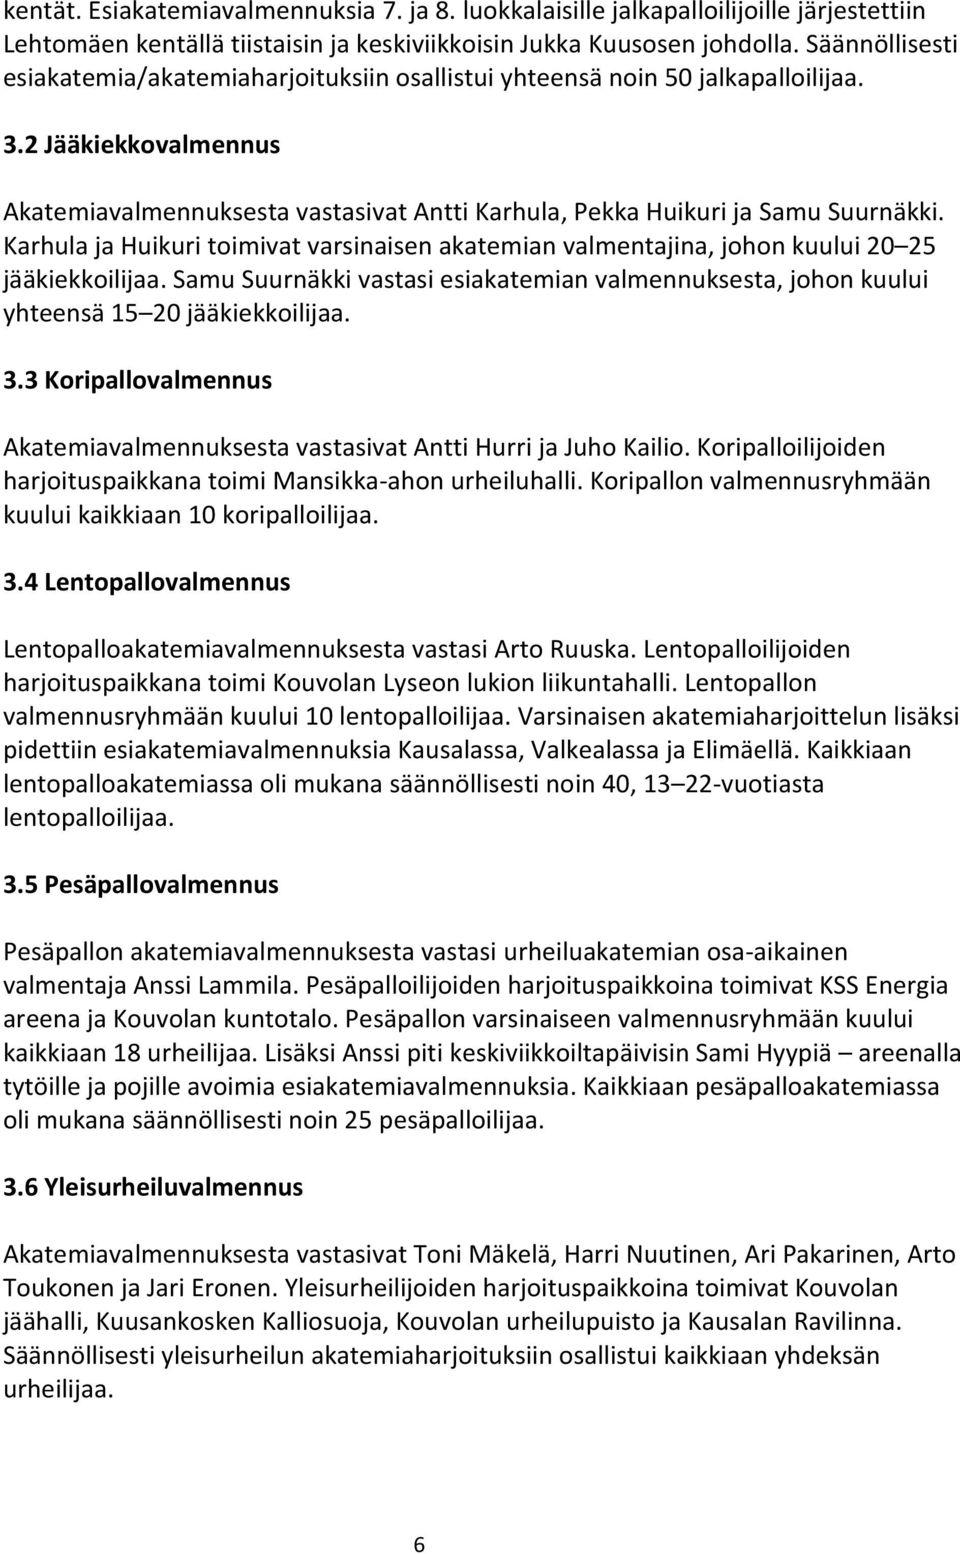 Karhula ja Huikuri toimivat varsinaisen akatemian valmentajina, johon kuului 20 25 jääkiekkoilijaa. Samu Suurnäkki vastasi esiakatemian valmennuksesta, johon kuului yhteensä 15 20 jääkiekkoilijaa. 3.